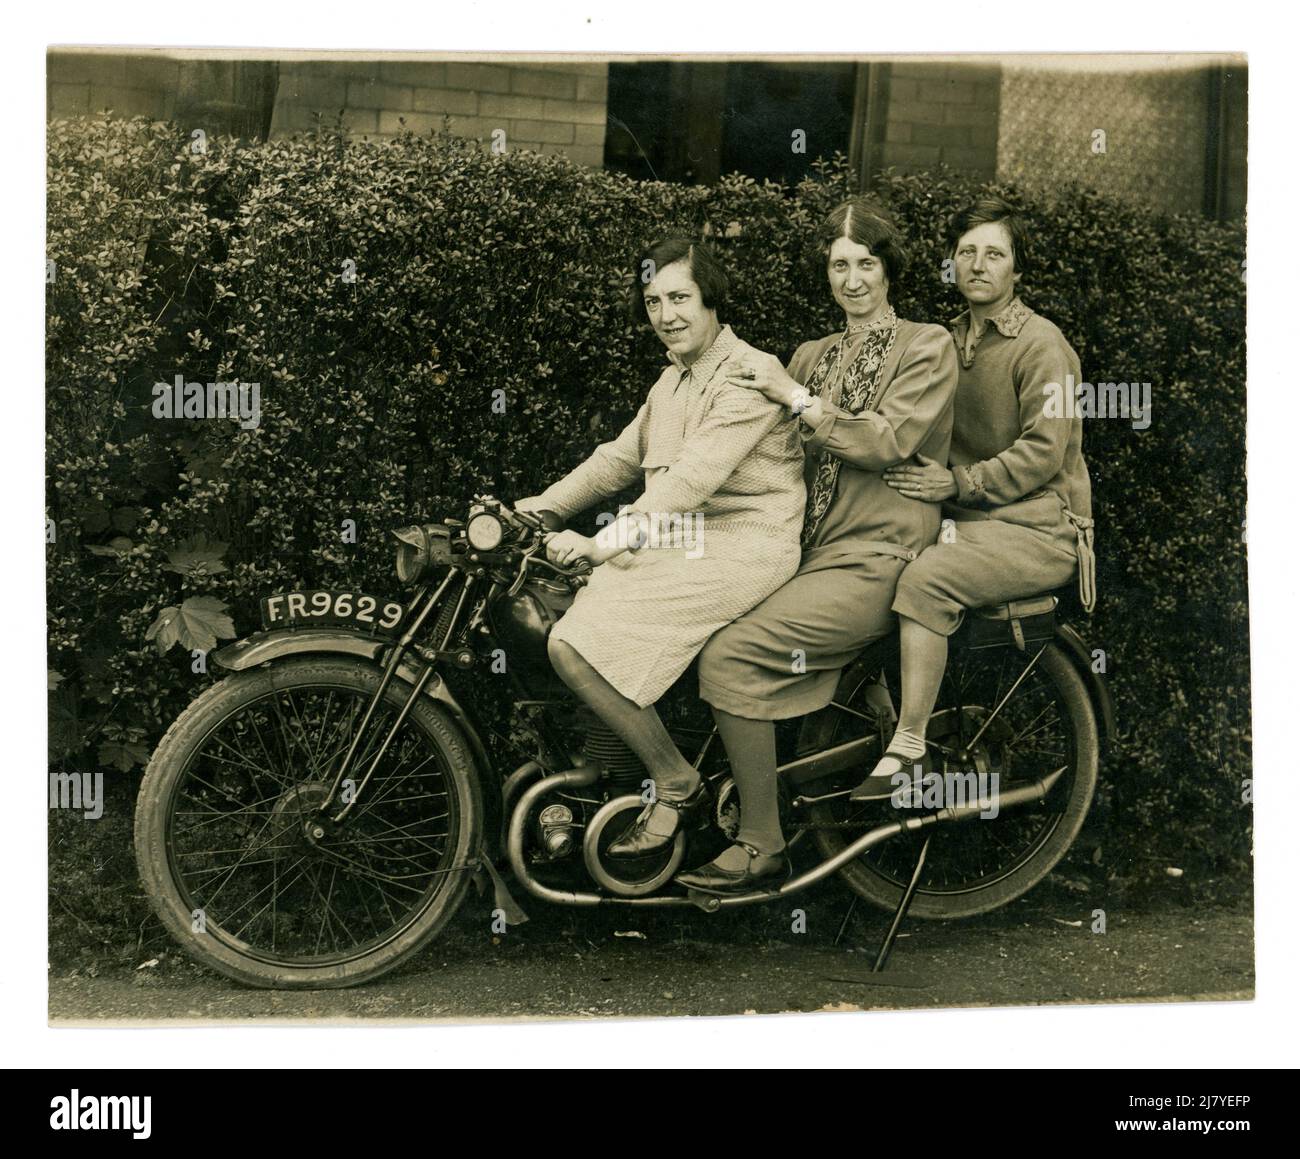 Originale, humorvolle Postkarte aus den 1920er Jahren von 3 reiferen Frauen/Frauen mittleren Alters, Freunden, die zusammen auf einem Motorrad sitzen, Sozialleitern fahren, Urlaub im Badeort Blackpool, Lancashire, Großbritannien, genießen vom 1. Mai 1929, Stockfoto